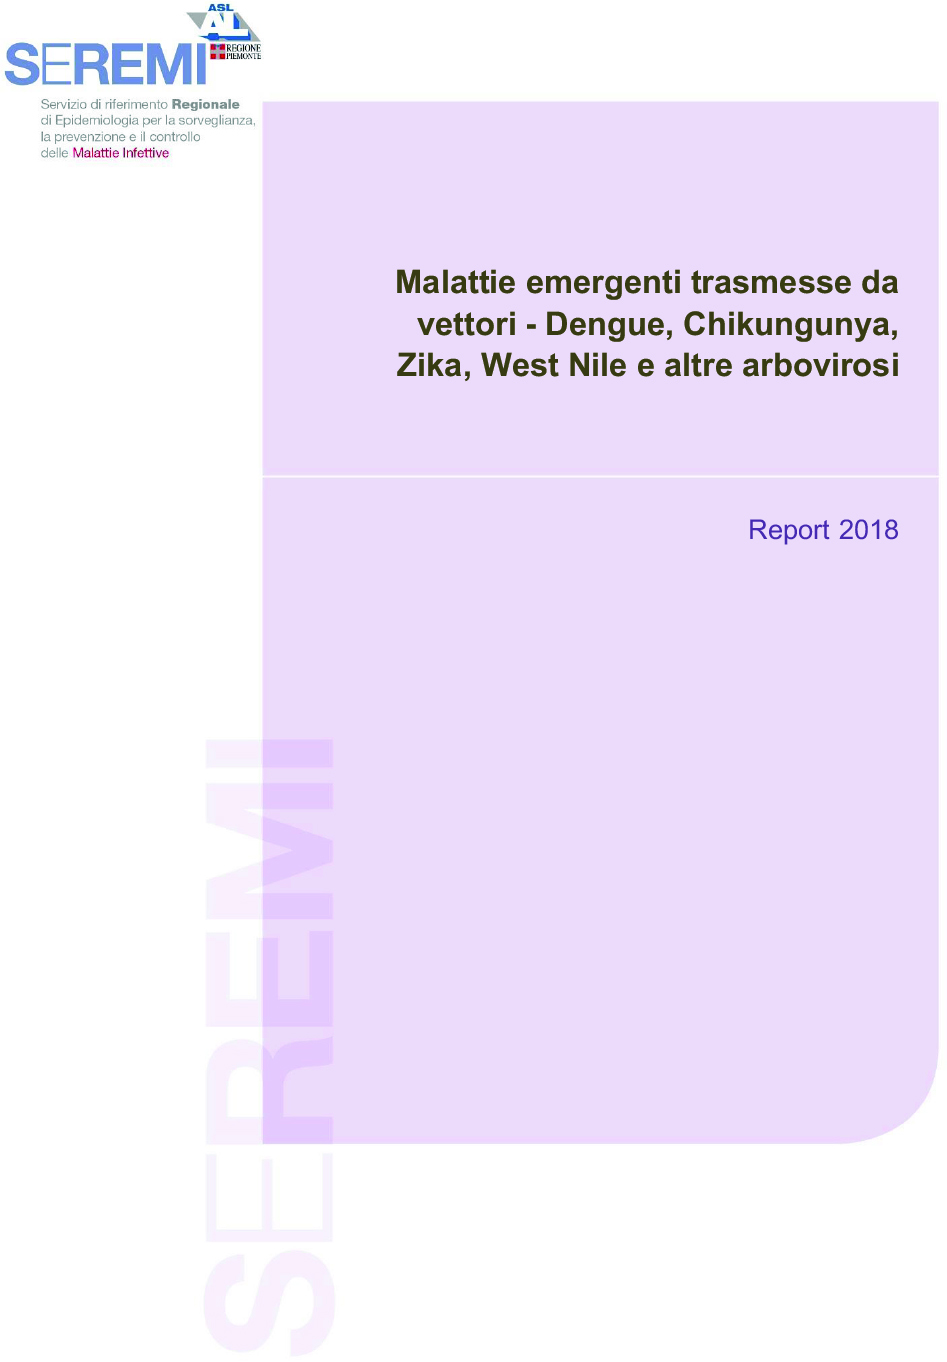 Report Arbovirosi in Piemonte 2018 1